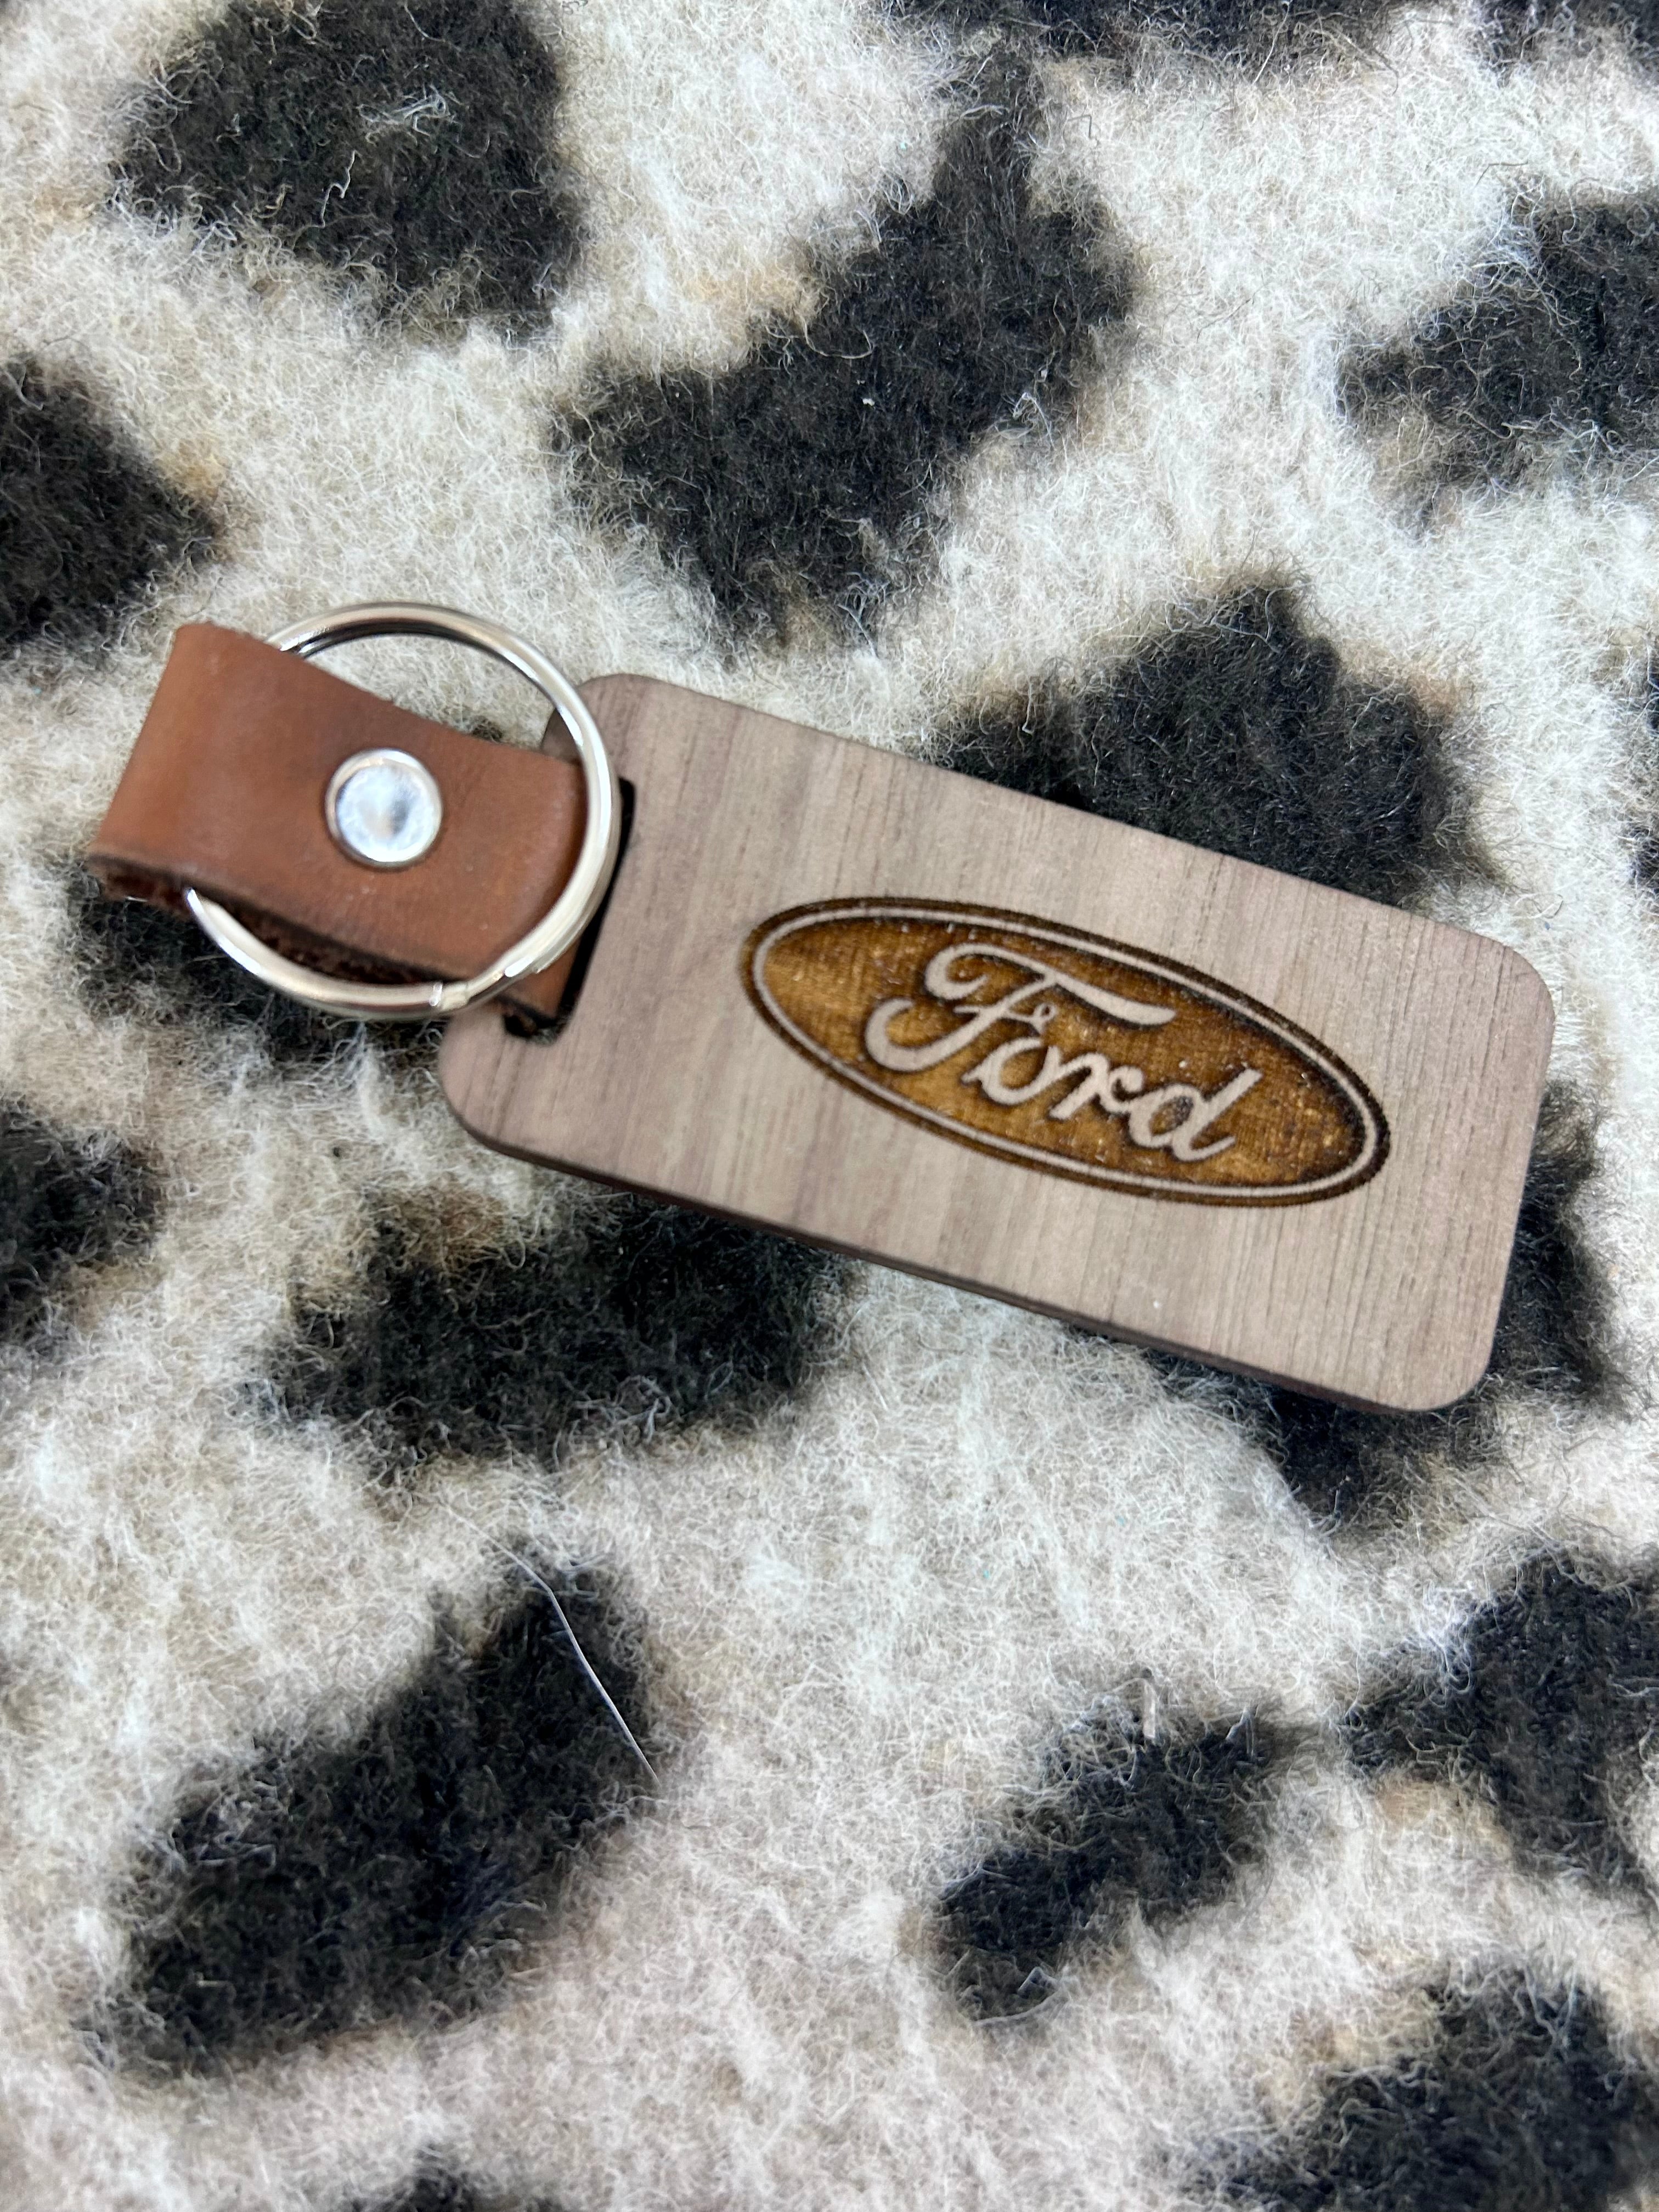 Wooden keychains